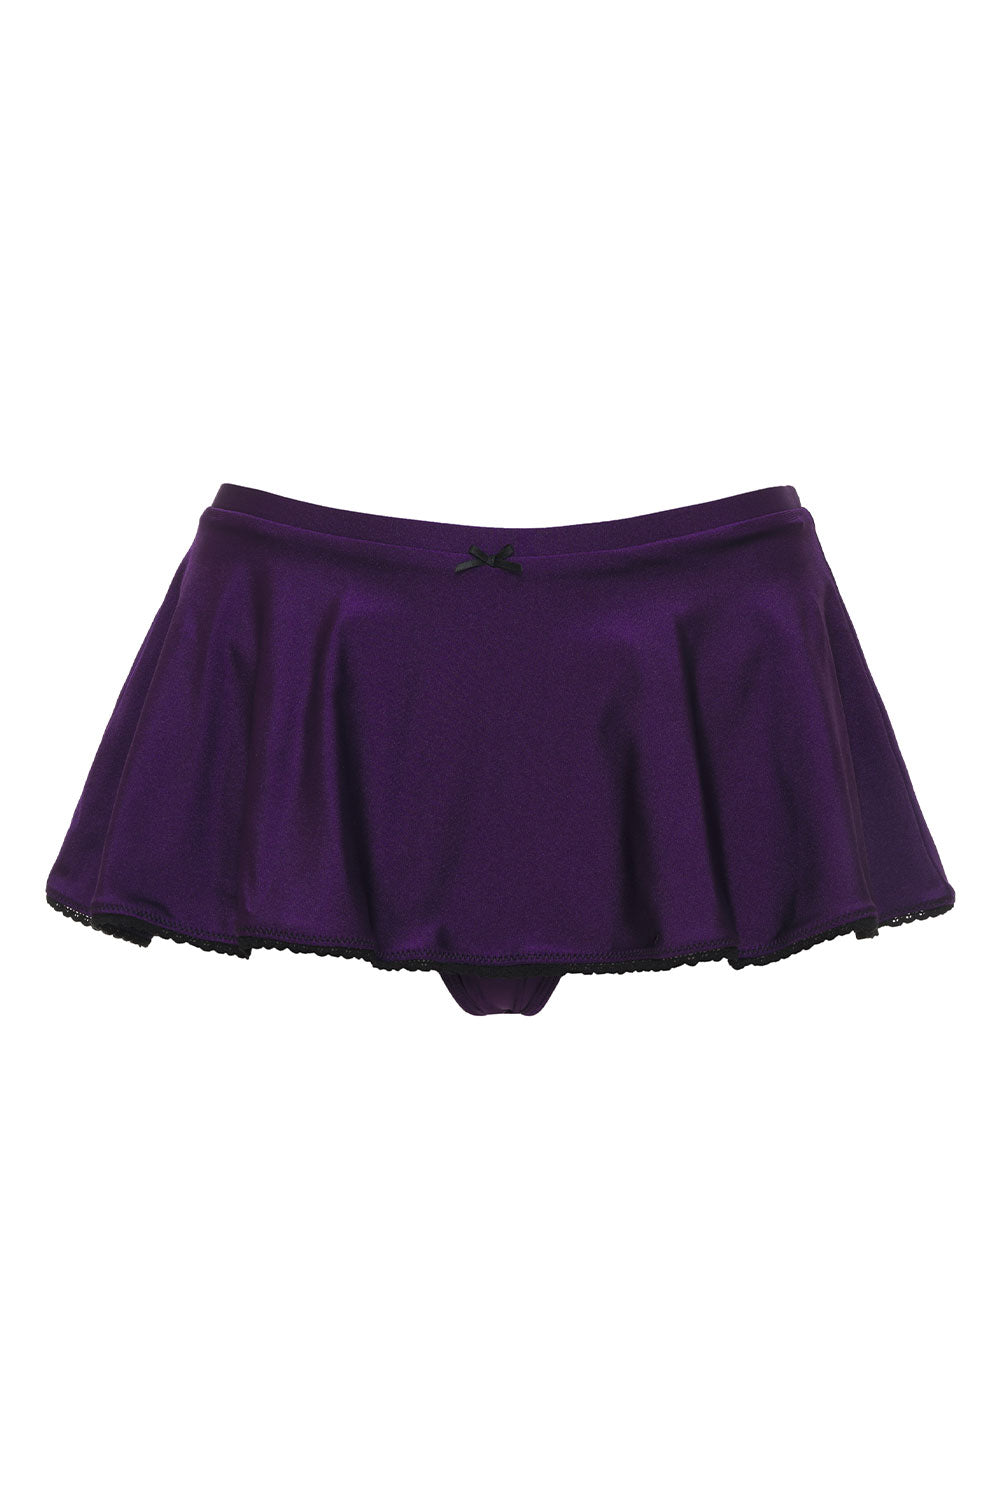 Izabella Shine Swim Skirt Bikini Bottom - Candied Violet